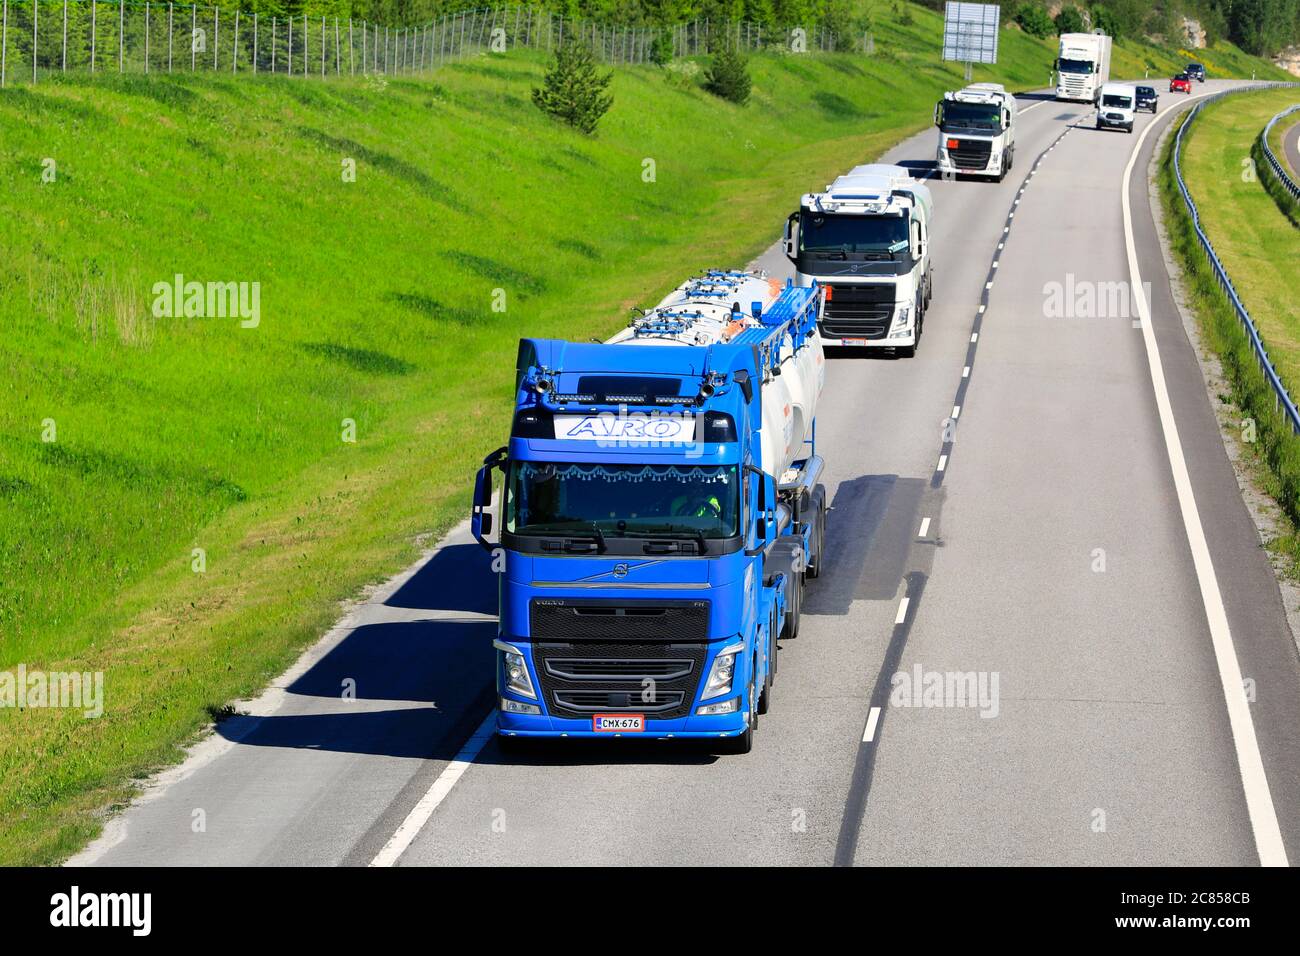 Quatre camions, camions-citernes Volvo FH et camion-plateforme Scania sur l'autoroute, un beau jour d'été. Salo, Finlande. 12 juin 2020. Banque D'Images